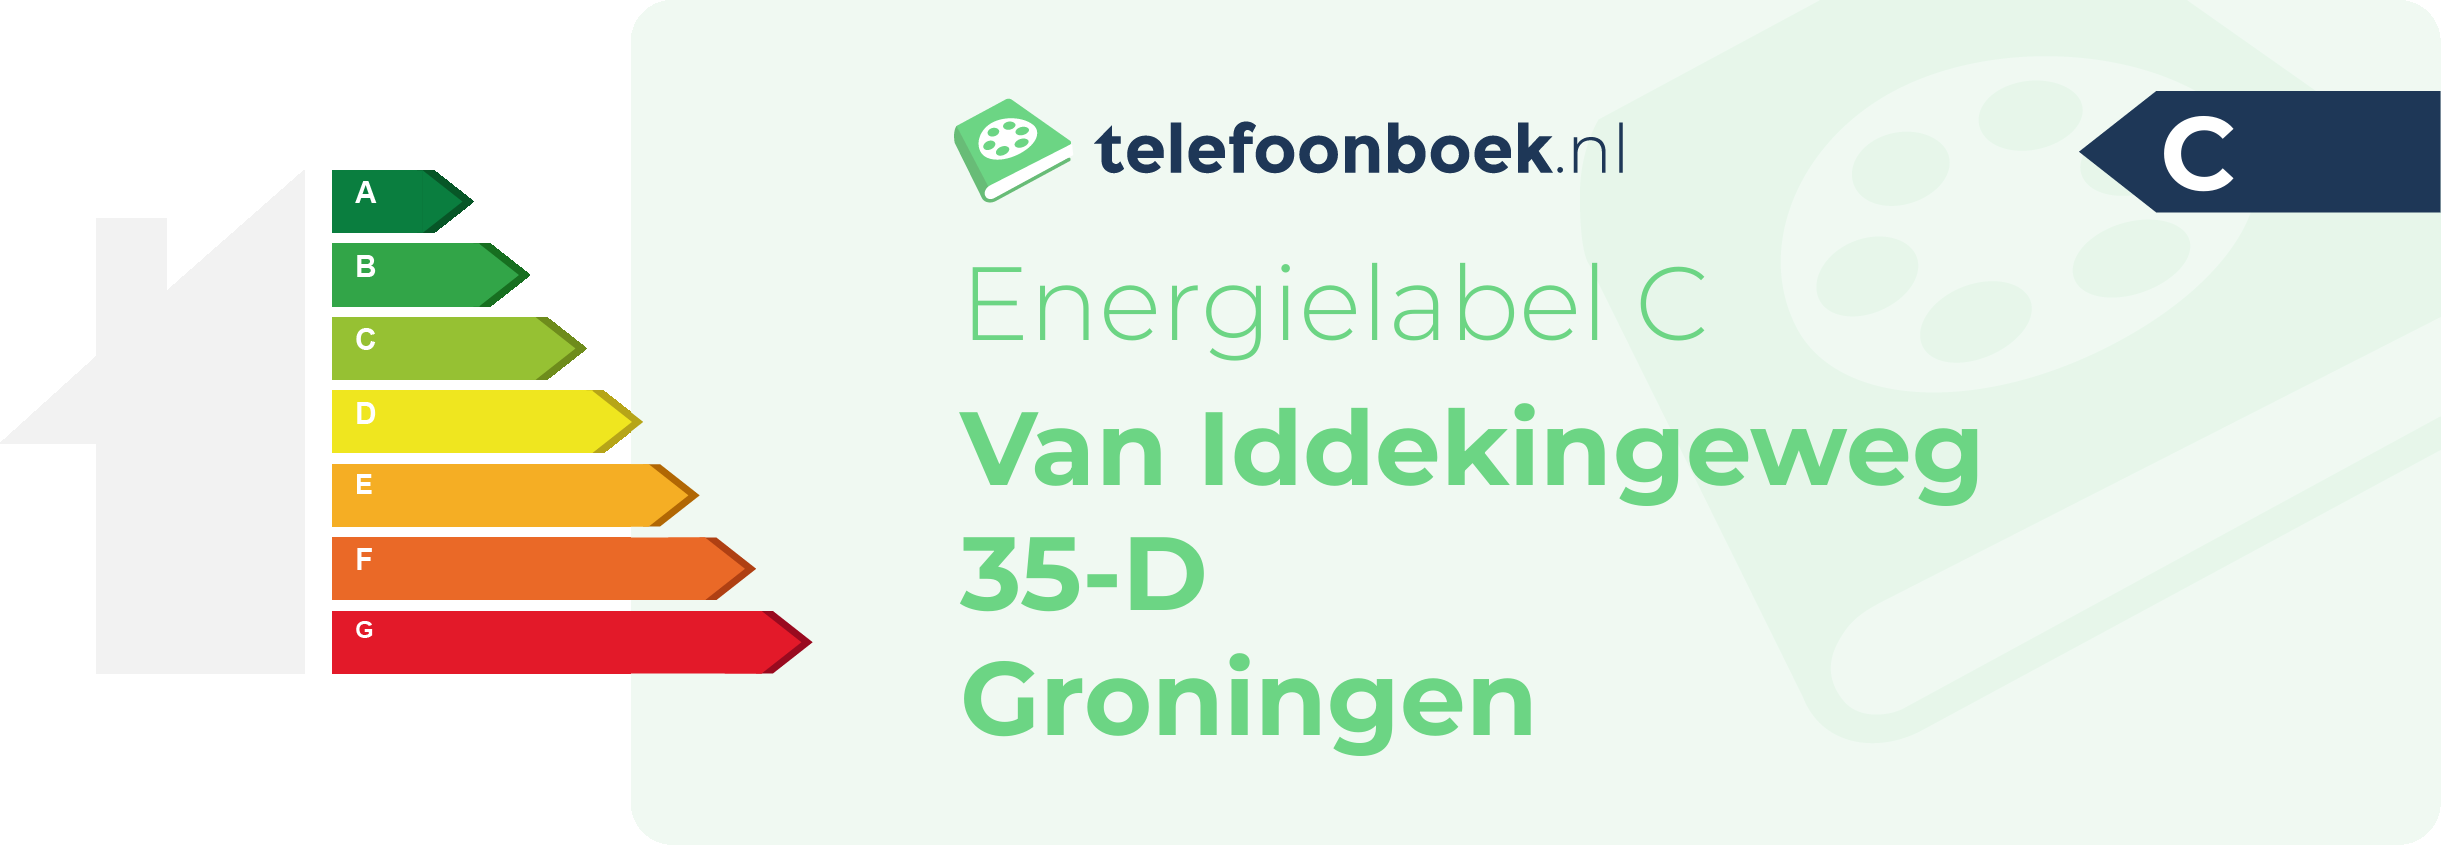 Energielabel Van Iddekingeweg 35-D Groningen